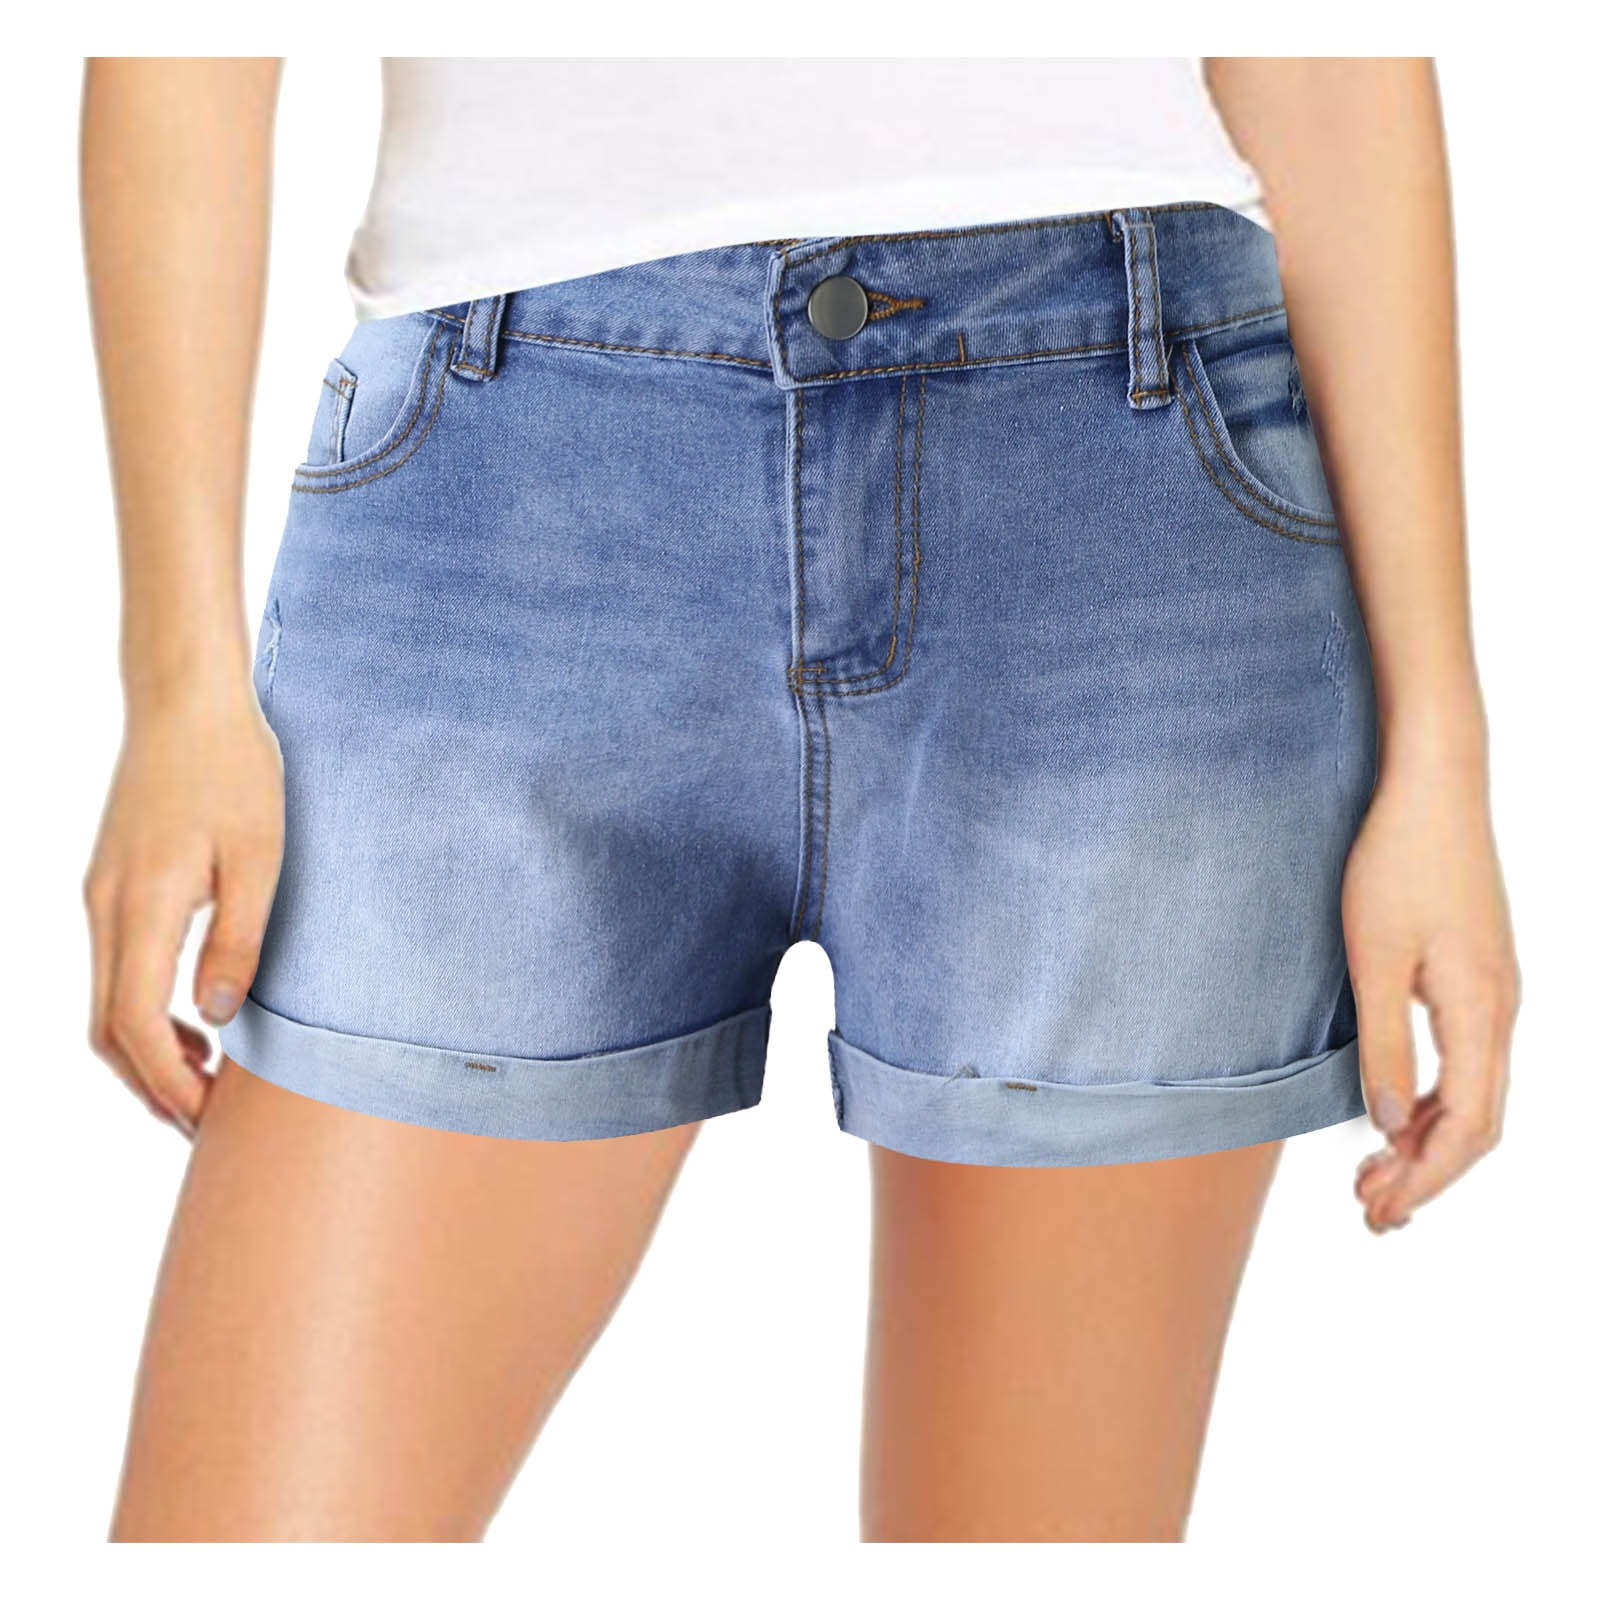 zuwimk Shorts For Women,Women's Relaxed Fit Flat Bermuda Short Light  Blue,XXL - Walmart.com